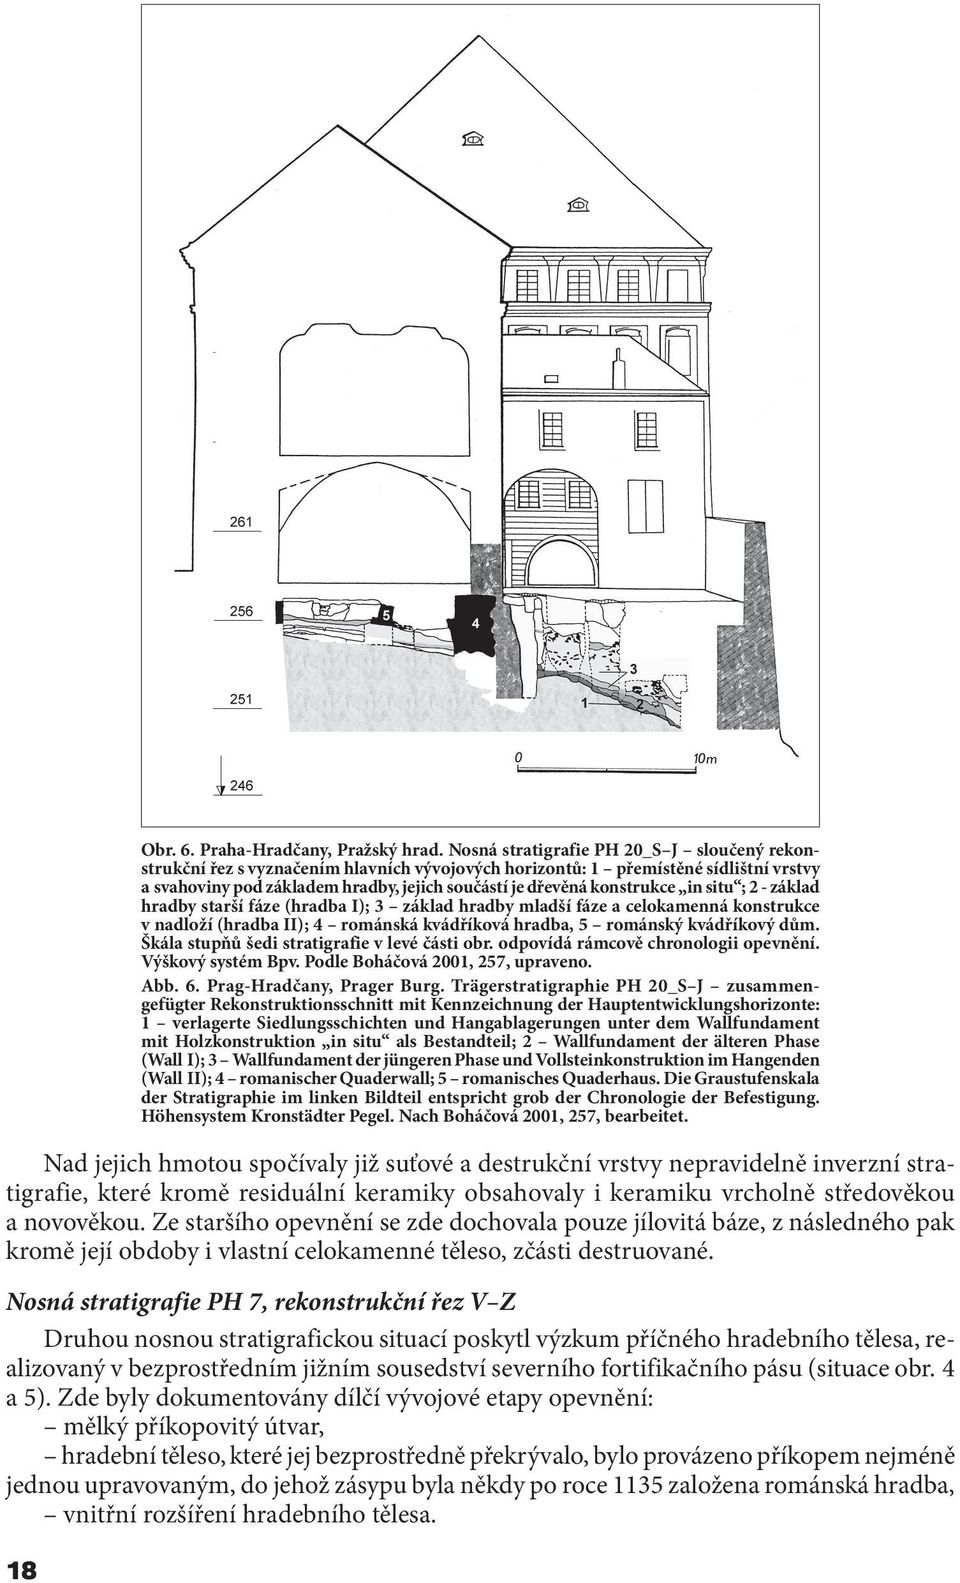 Nosná stratigrafie PH 7, rekonstrukční řez V Z Druhou nosnou stratigrafickou situací poskytl výzkum příčného hradebního tělesa, realizovaný v bezprostředním jižním sousedství severního fortifikačního